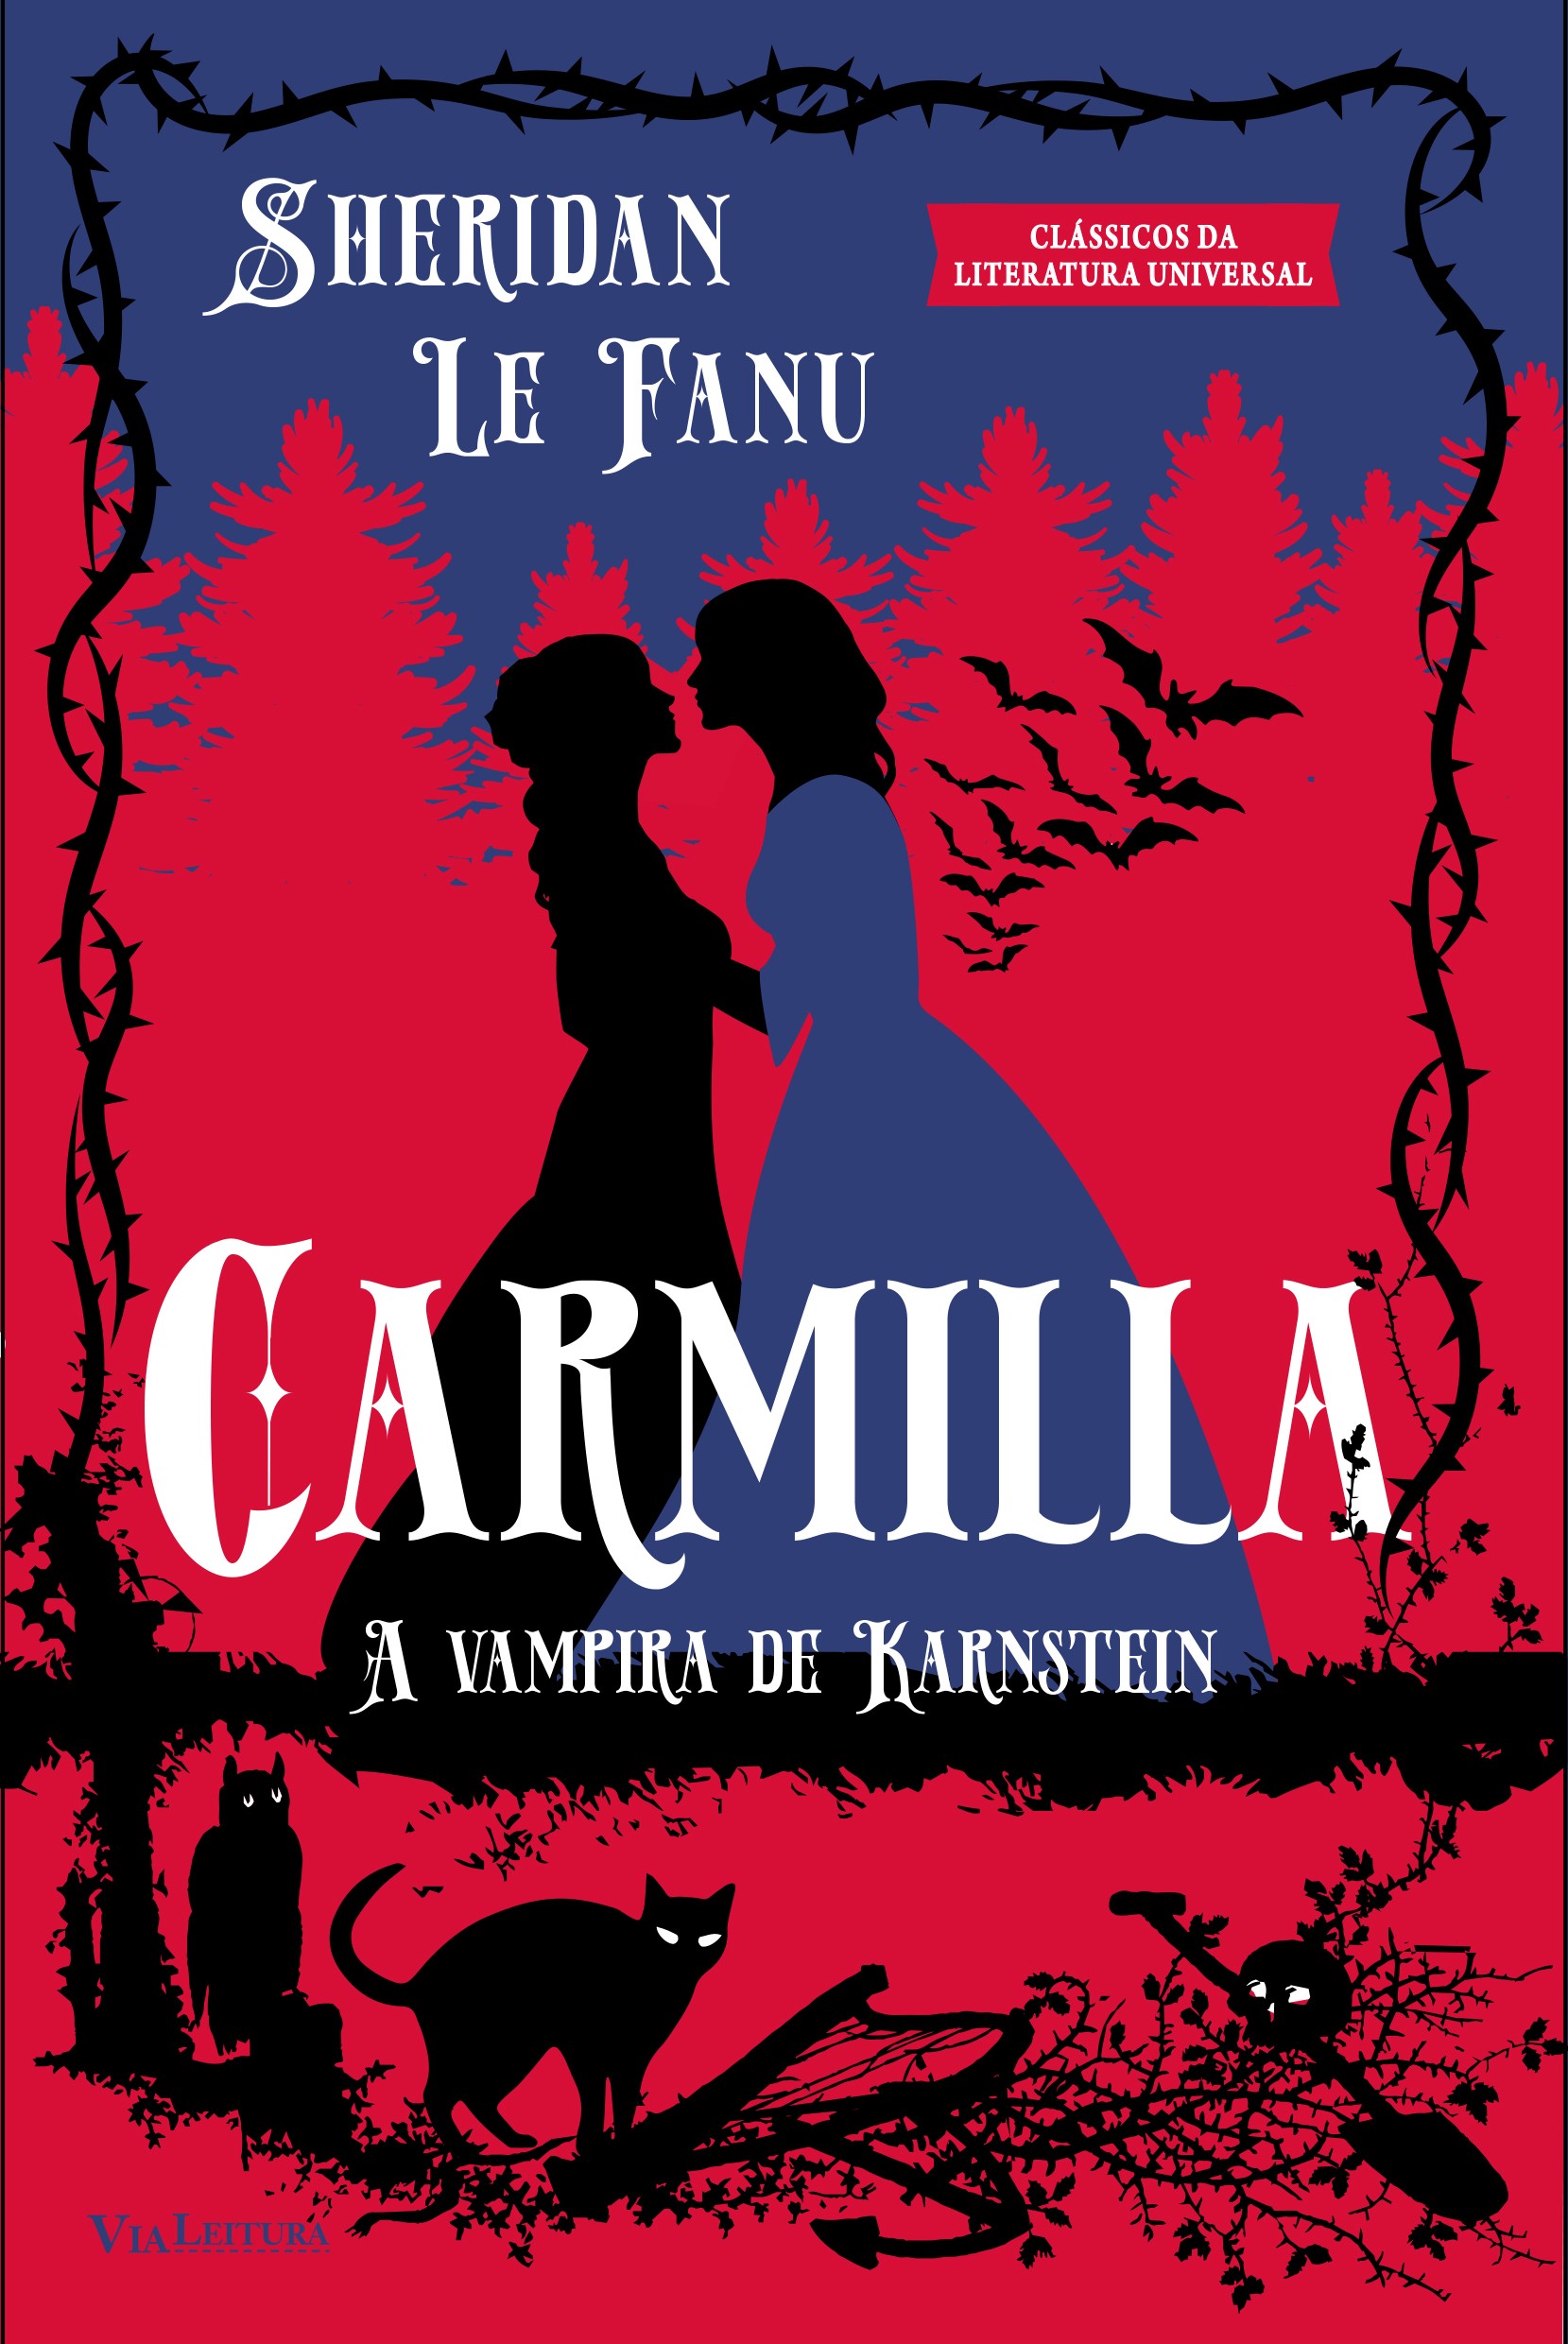 Livro Carmilla: a vampira de Karnenstein (Foto: Divulgação)